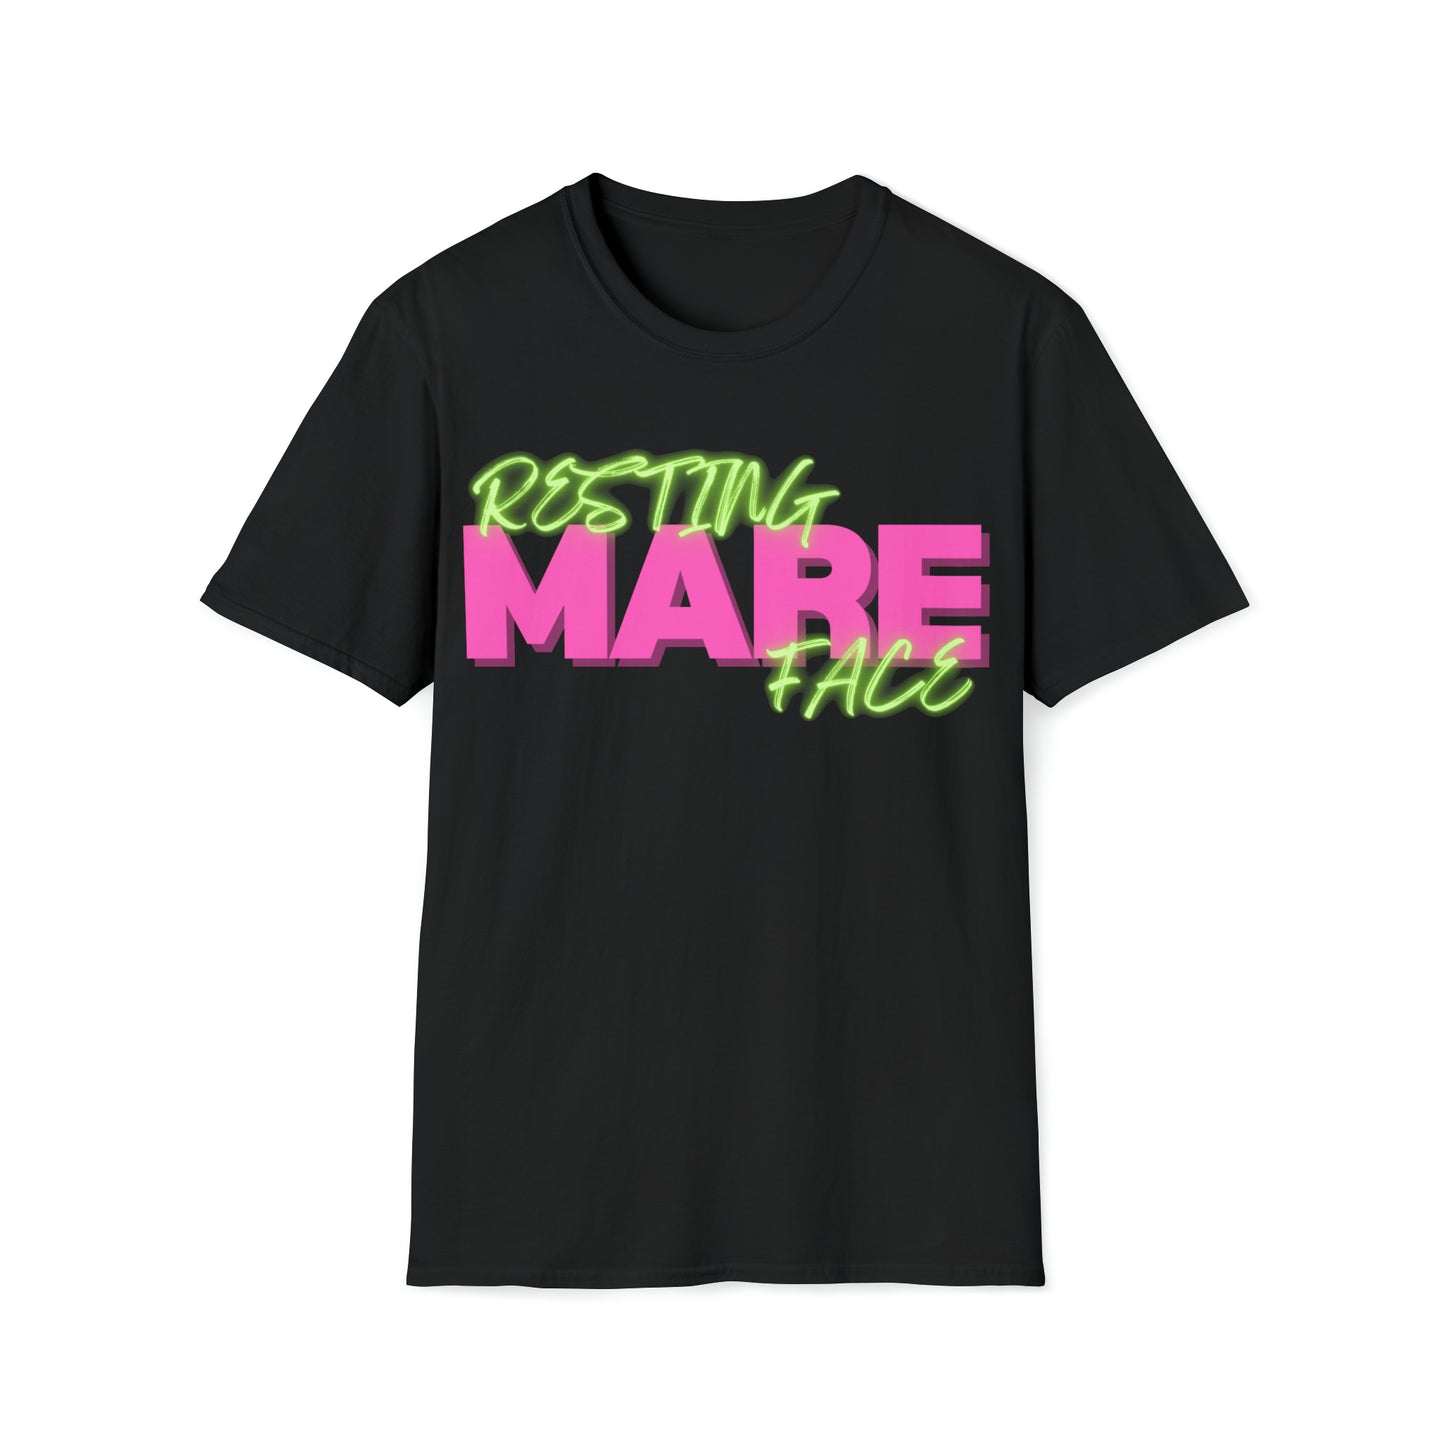 Resting Mare Face shirt t-shirt - unisex short sleeve t-shirt